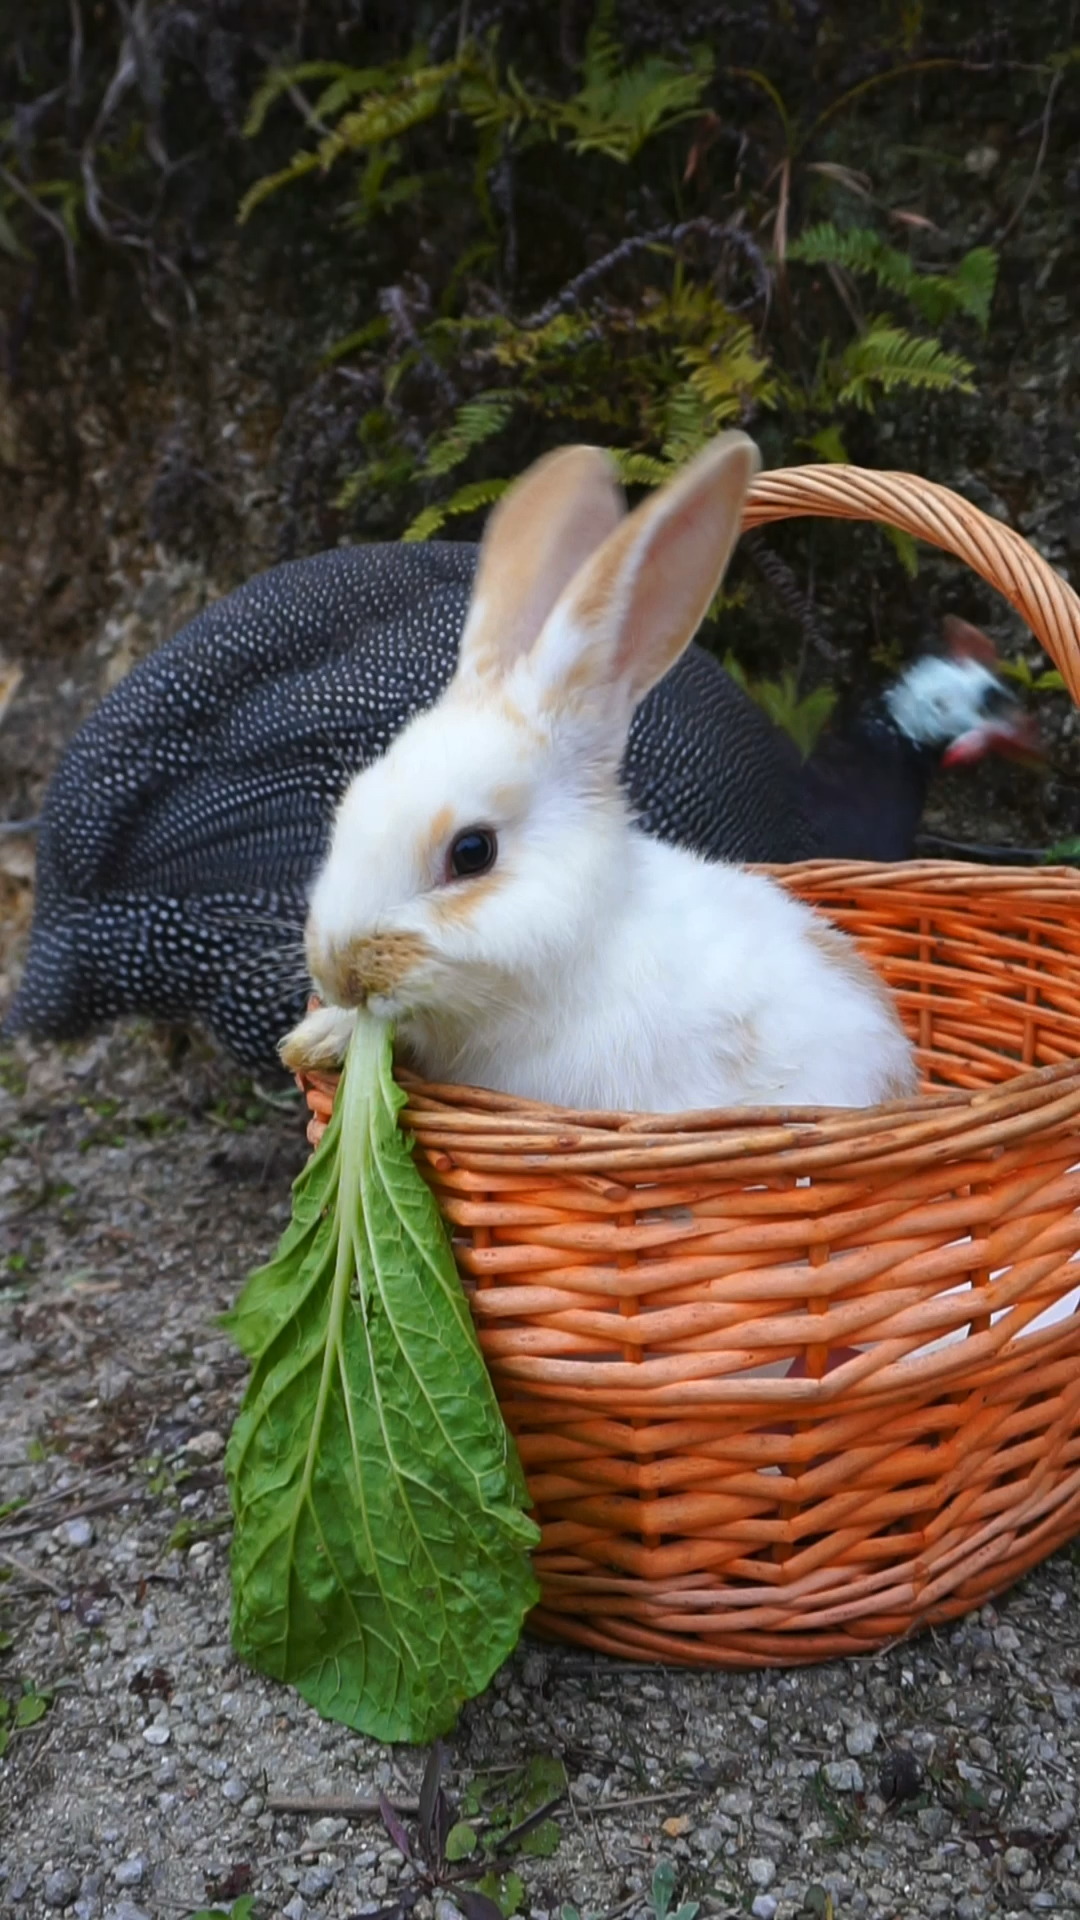 小兔子捉急吃青菜的样子呆萌呆萌的